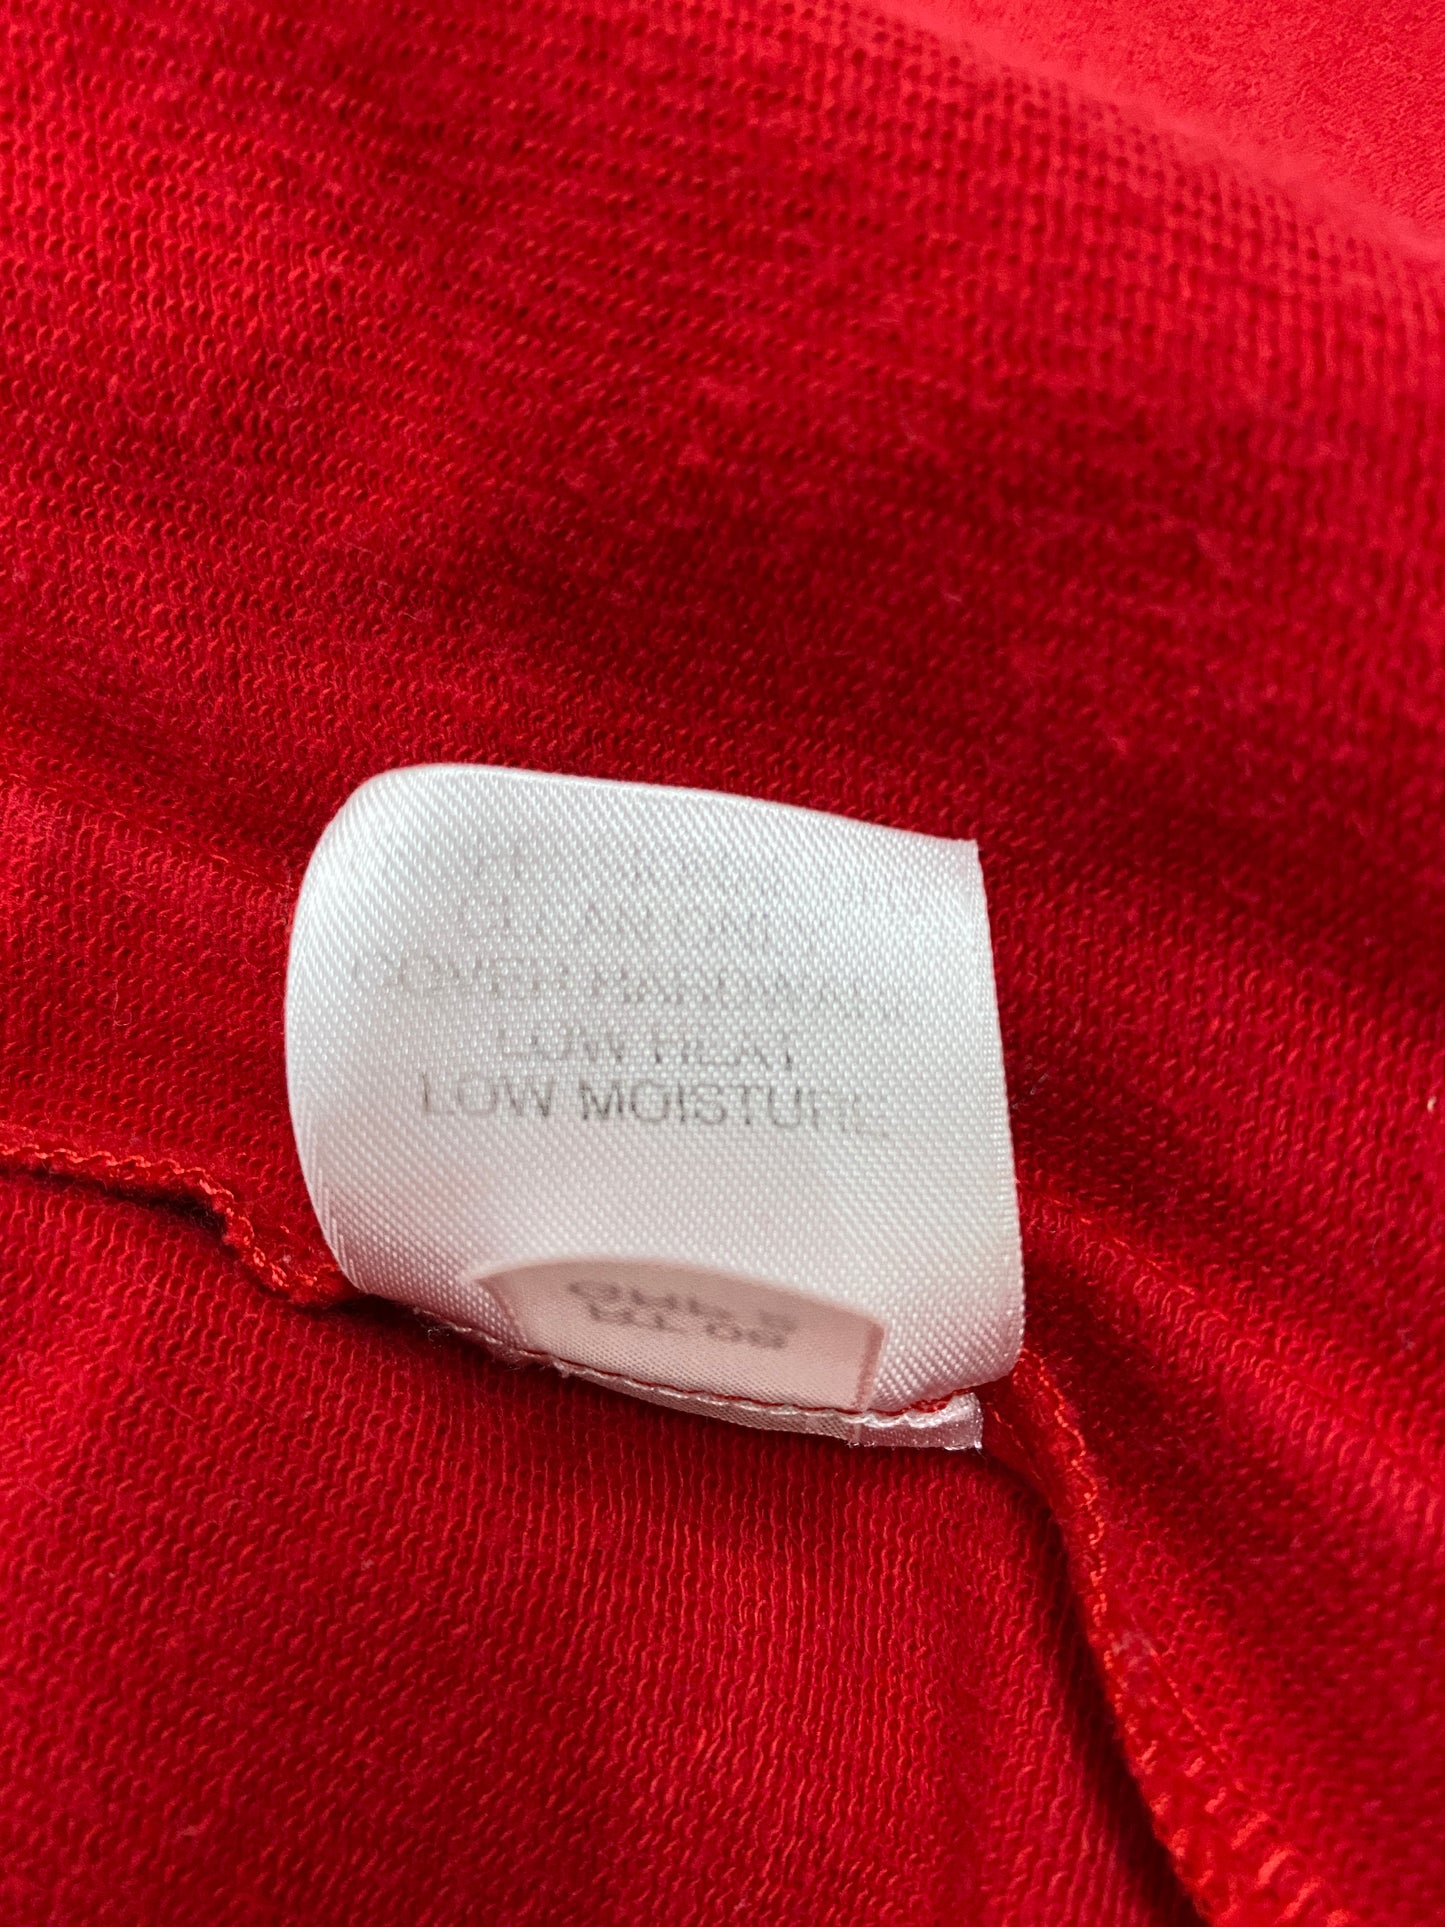 St. John Sport Jacket Red Size S SKU 000121-10